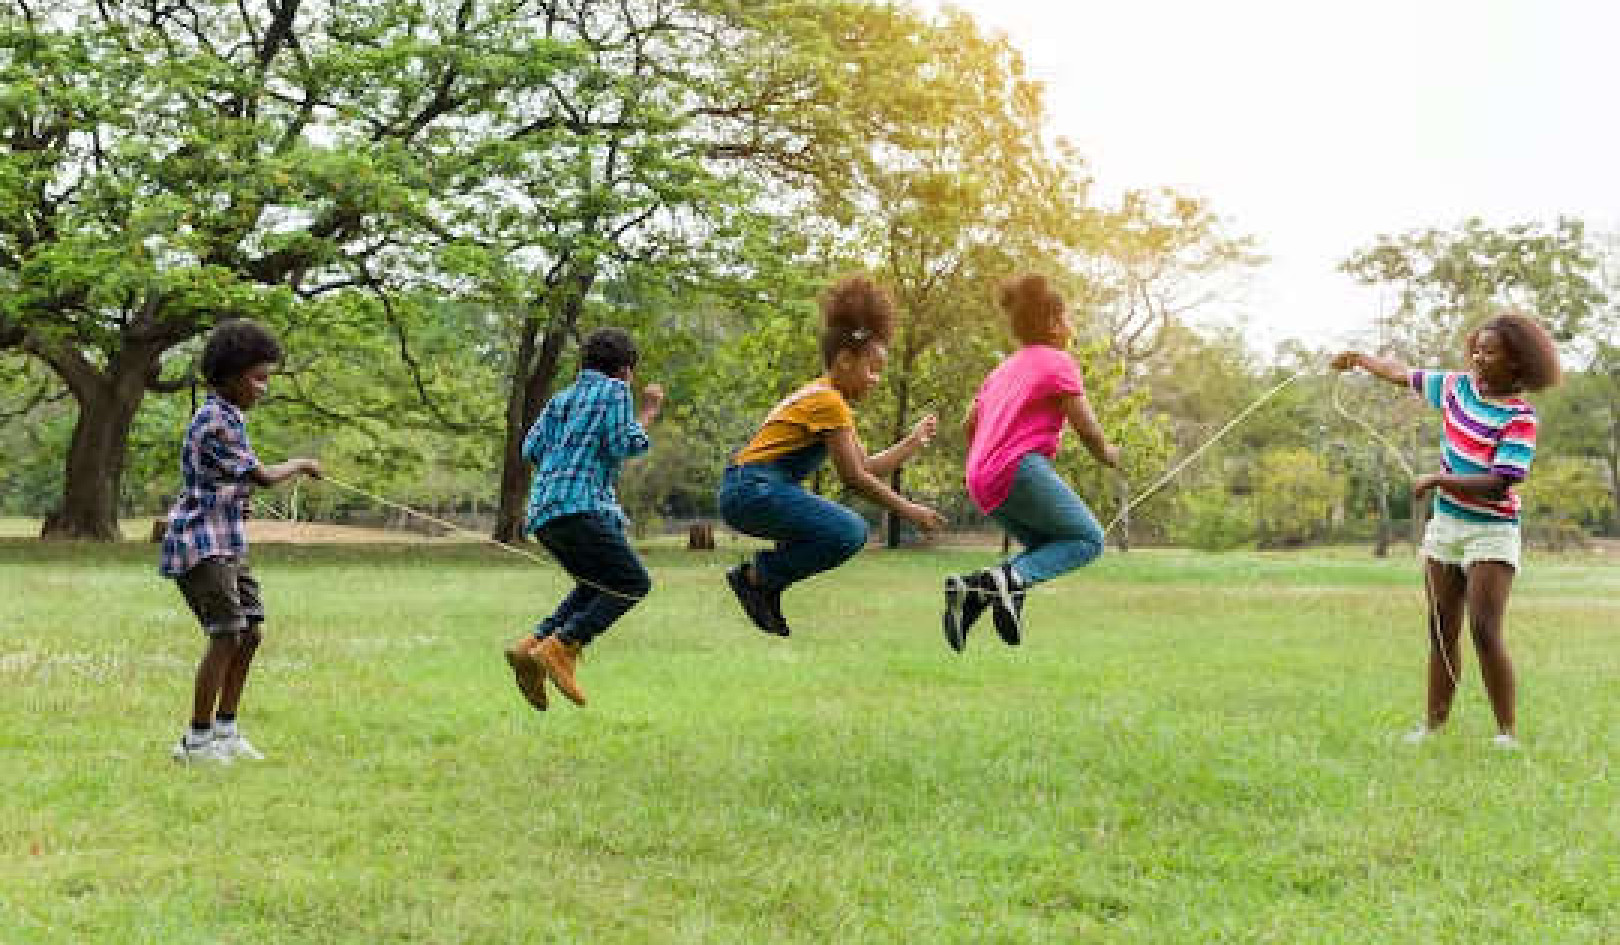 Діти та підлітки займаються недостатньо фізичною активністю?